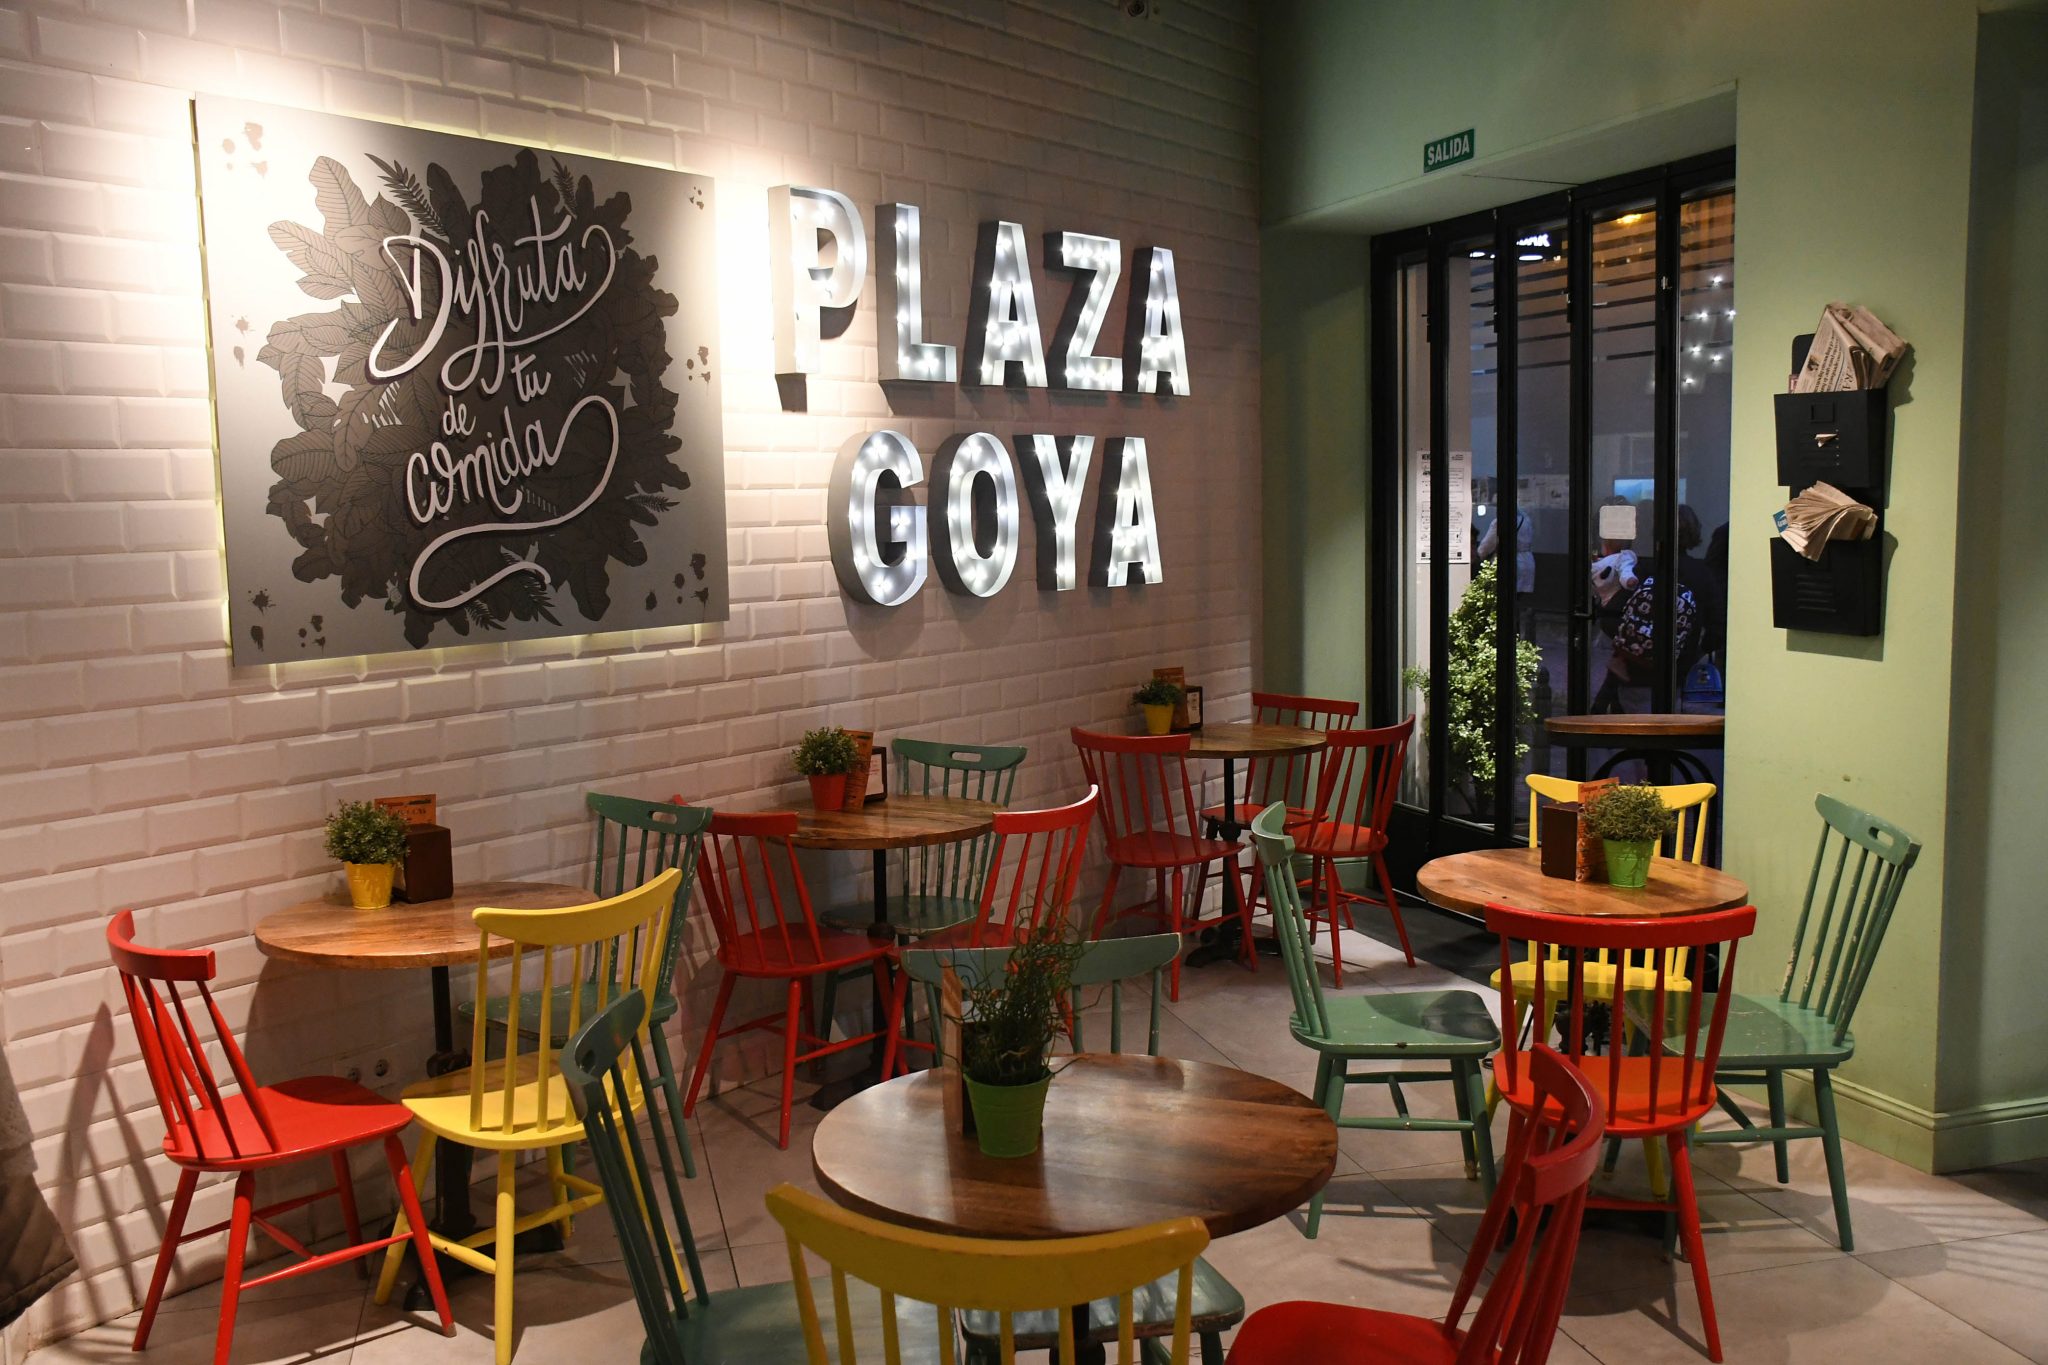 02. Plaza_Goya